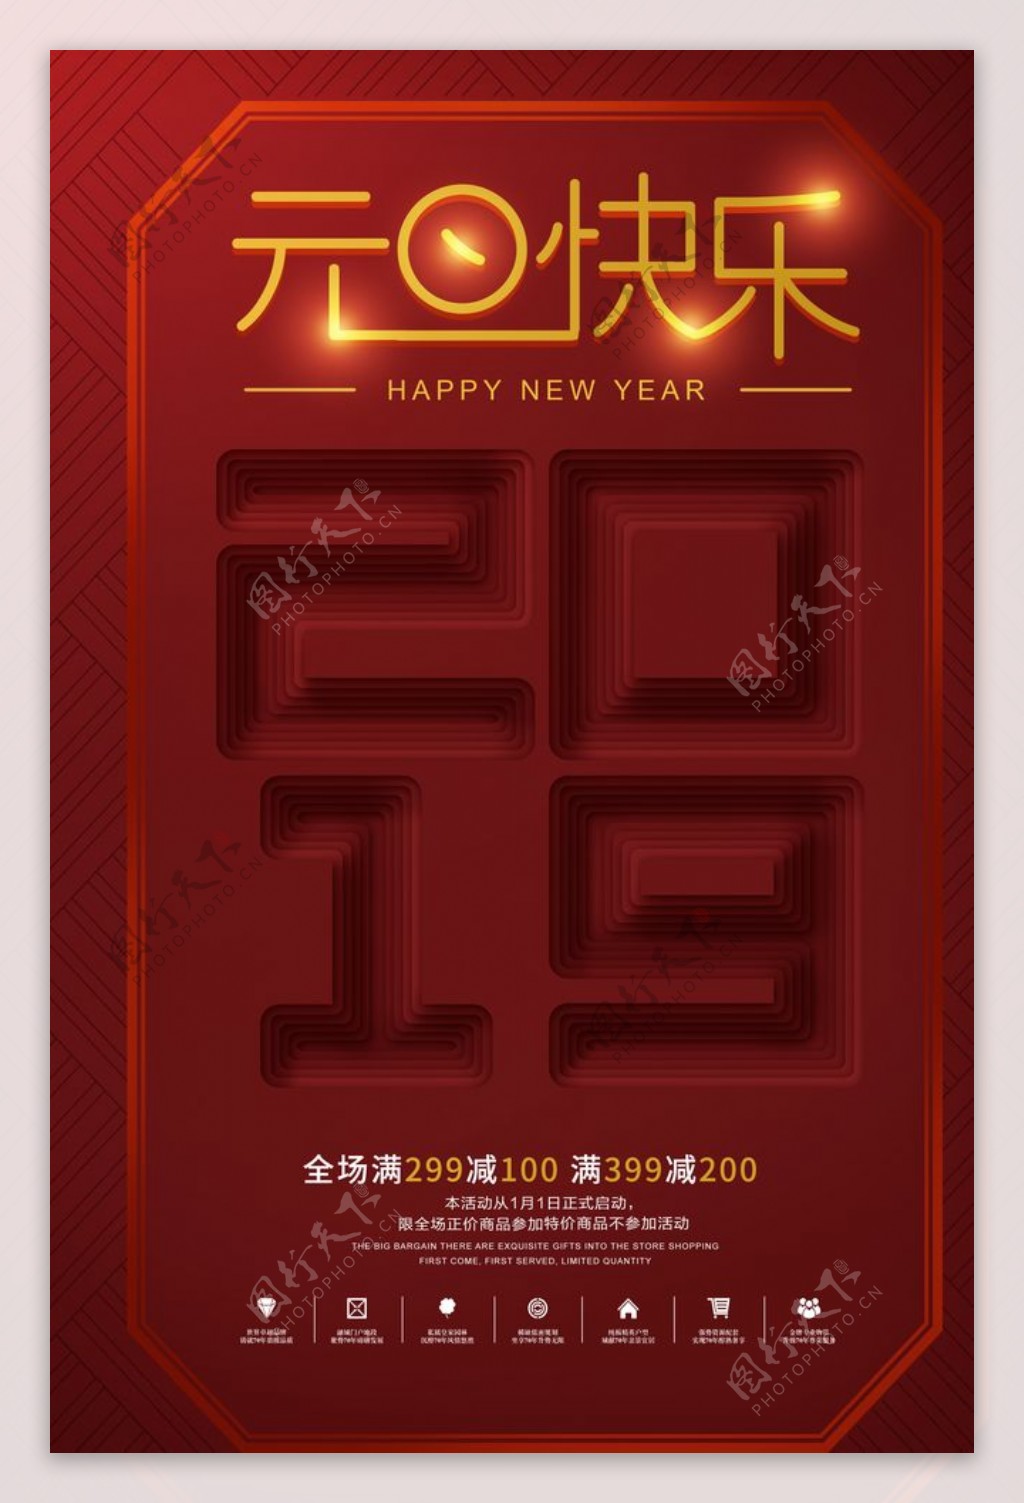 红色喜庆元旦快乐2019年海报